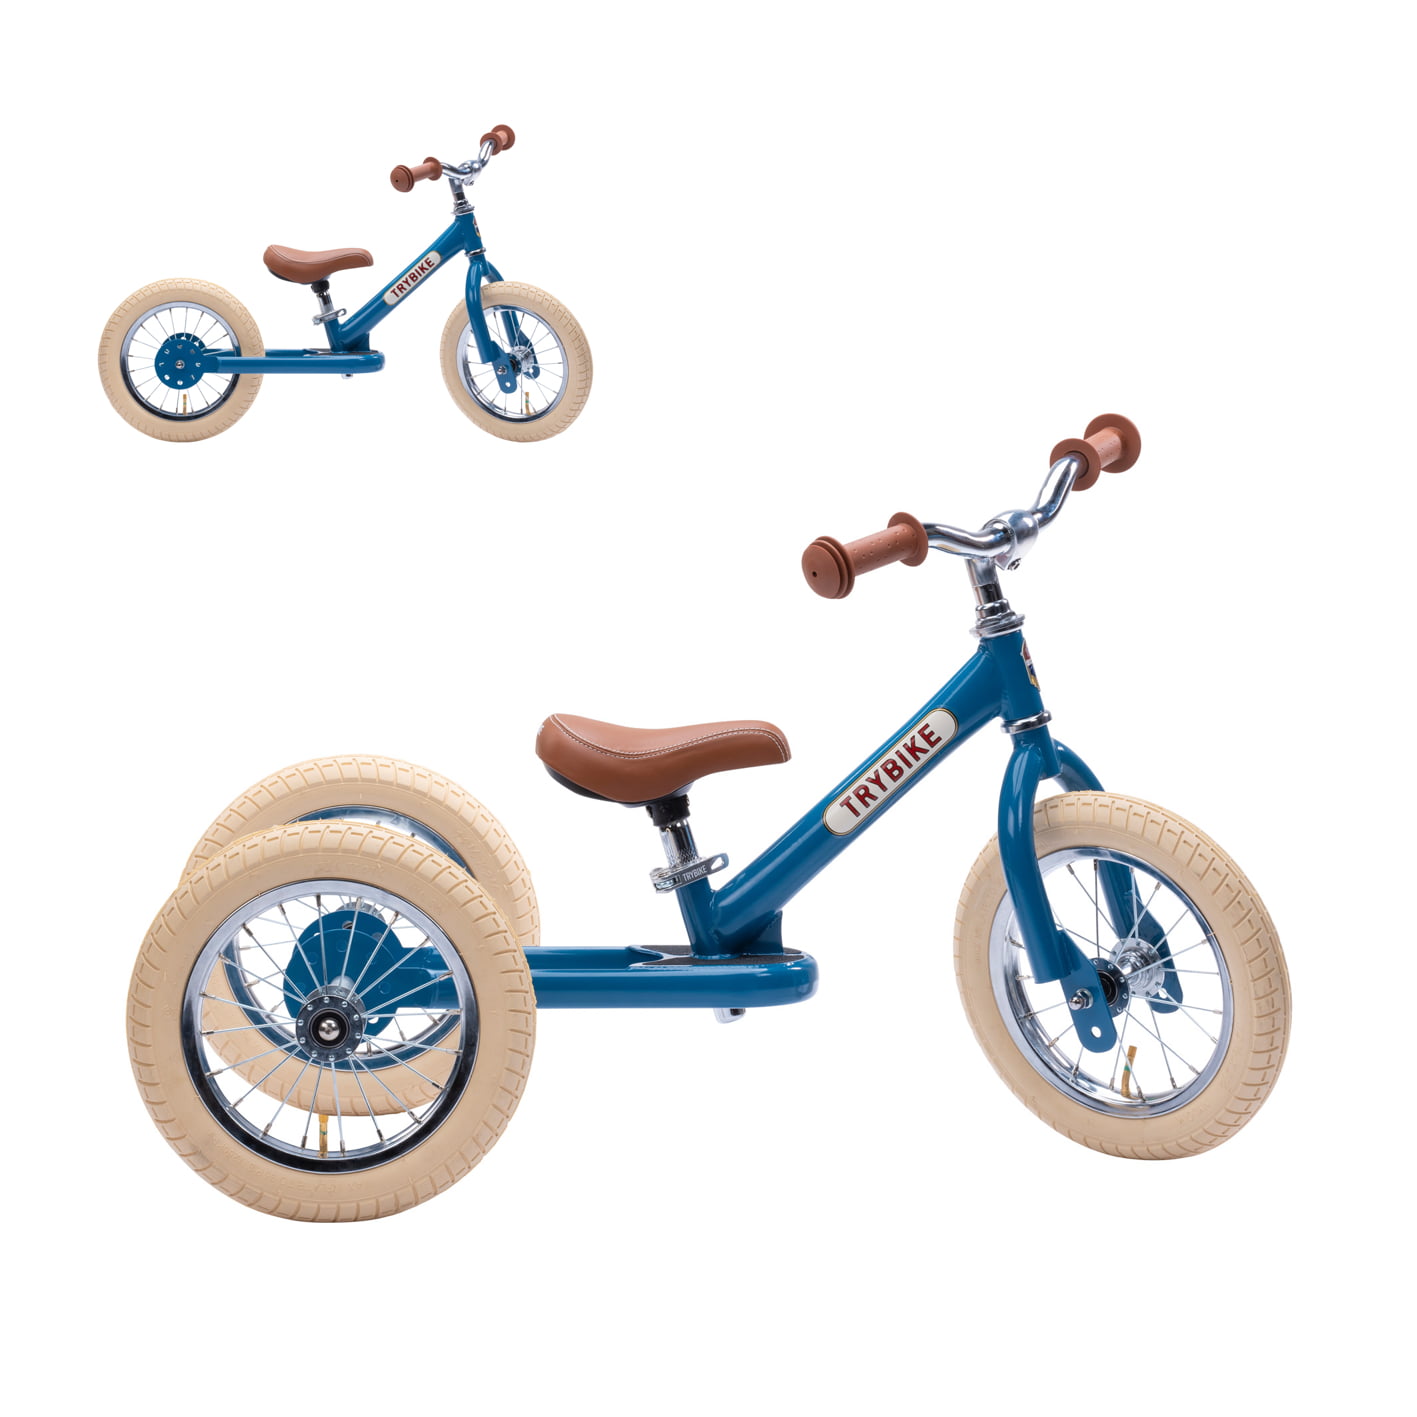 Trybike steel balance bike 2 in 1 – Vintage blue